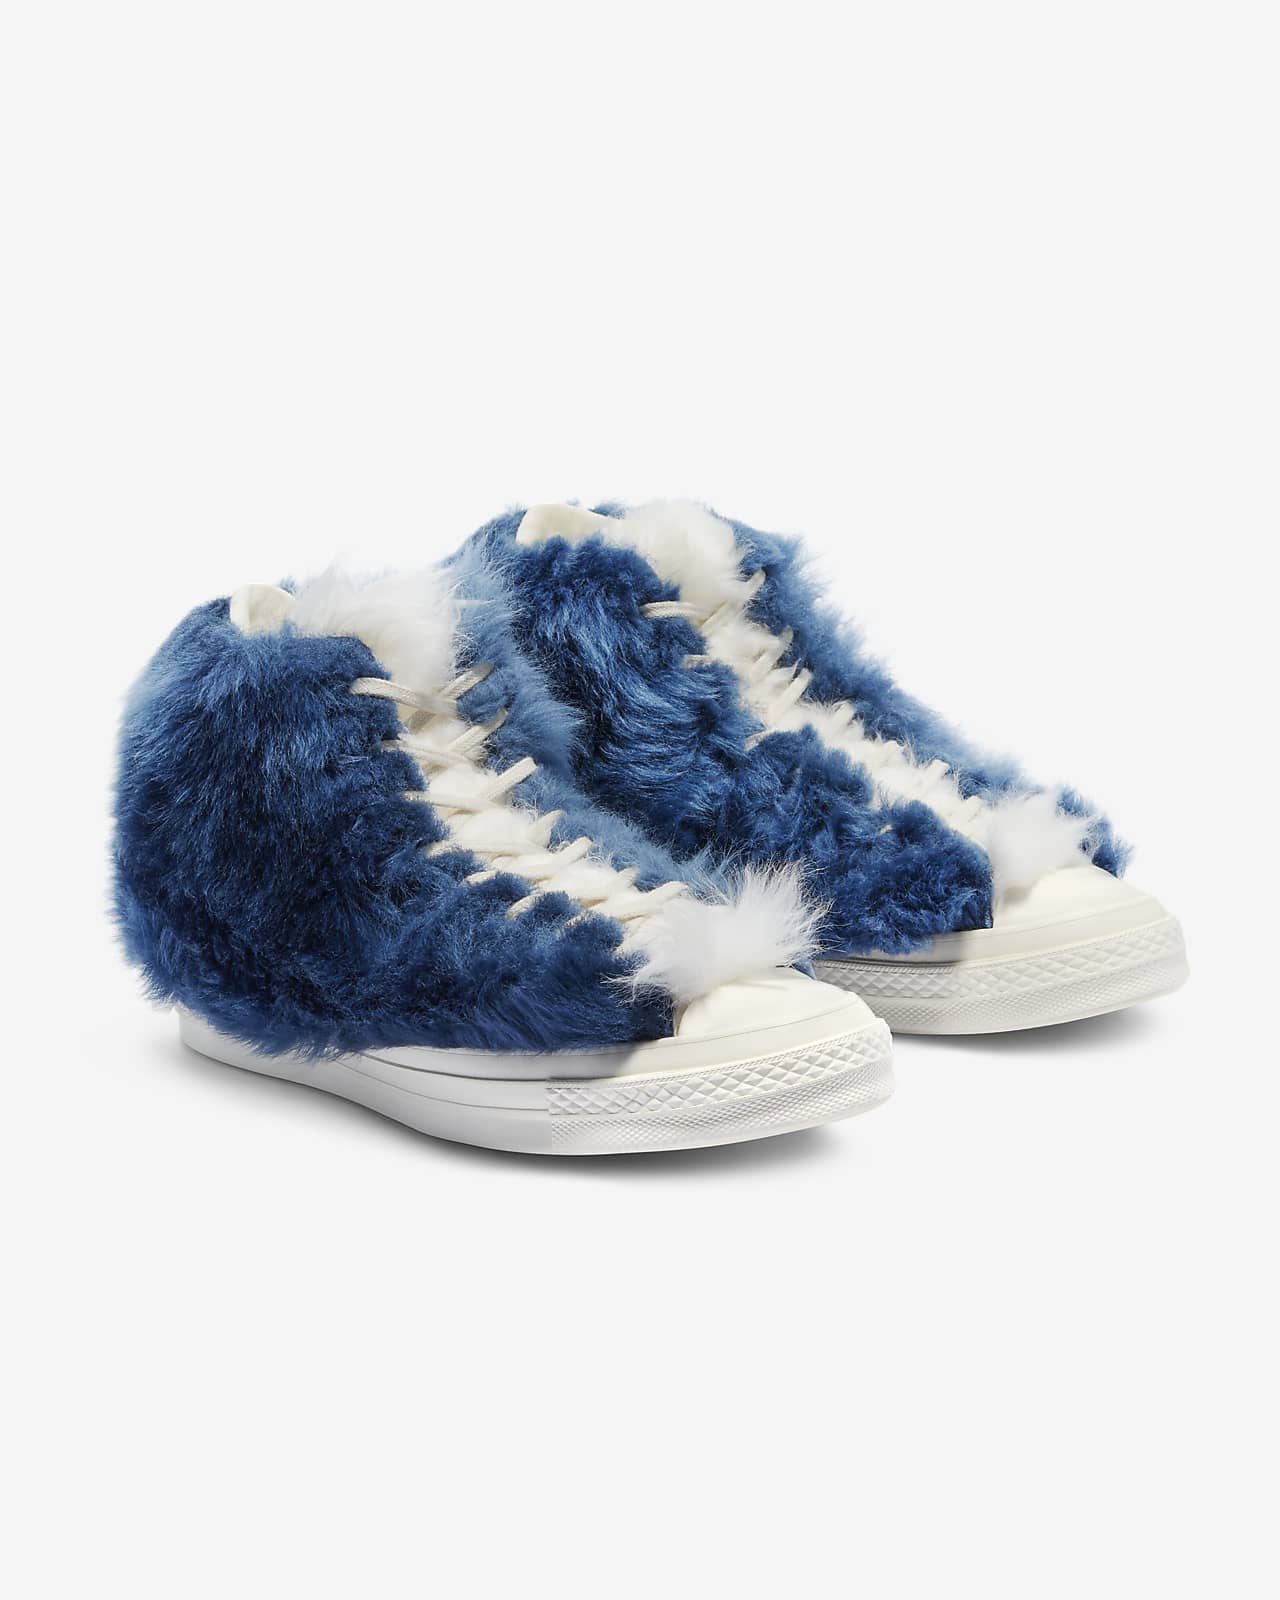 converse fur shoes